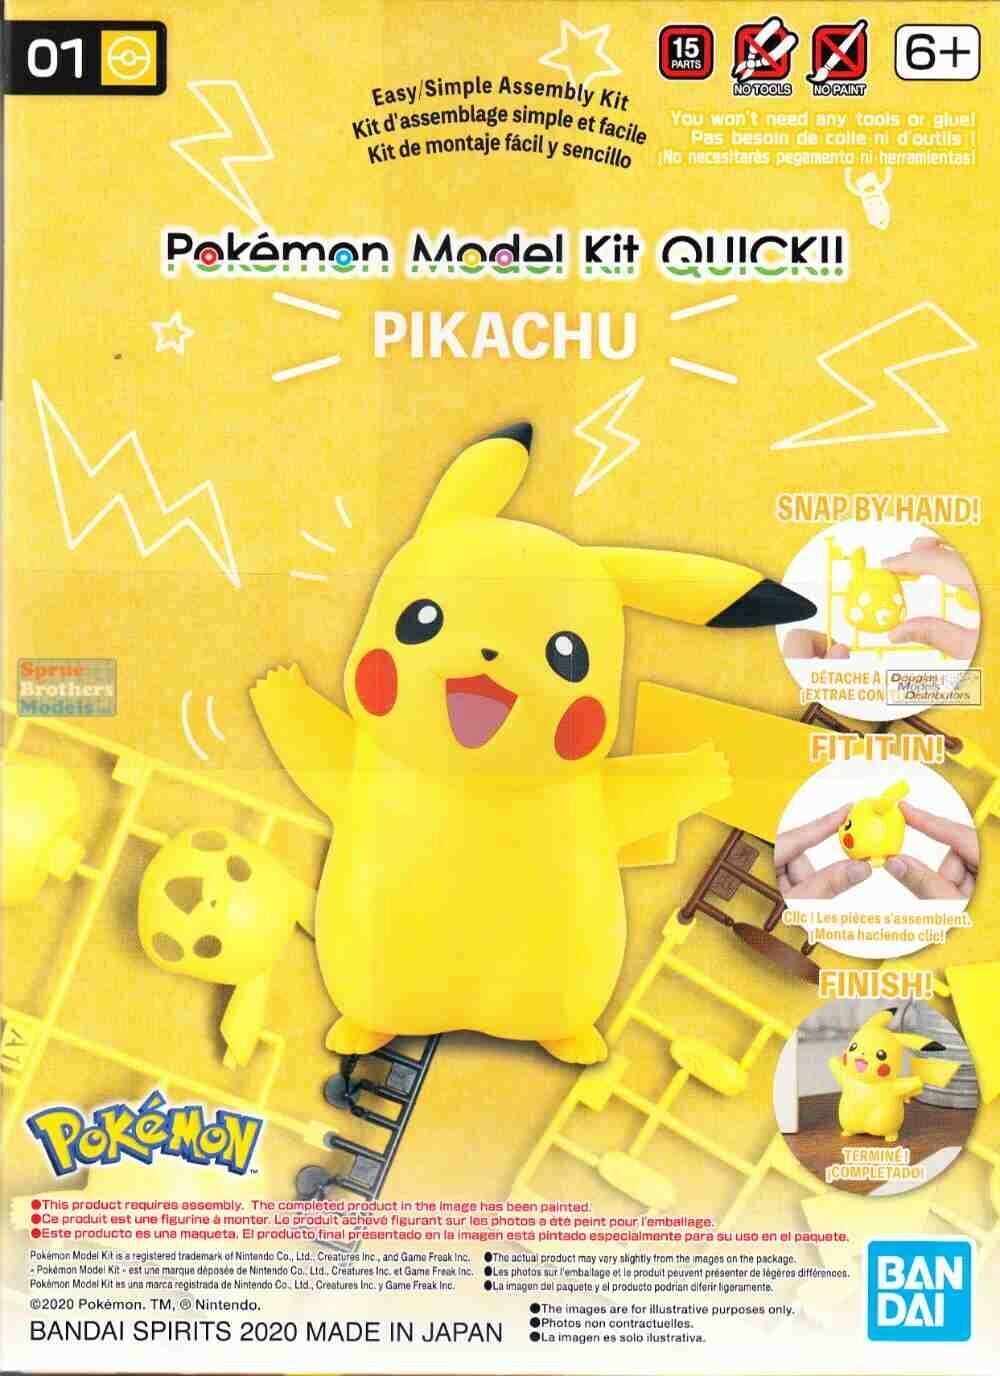 IN HAND Bandai Hobby Pokemon Pikachu Quick Model Kit USA Seller 